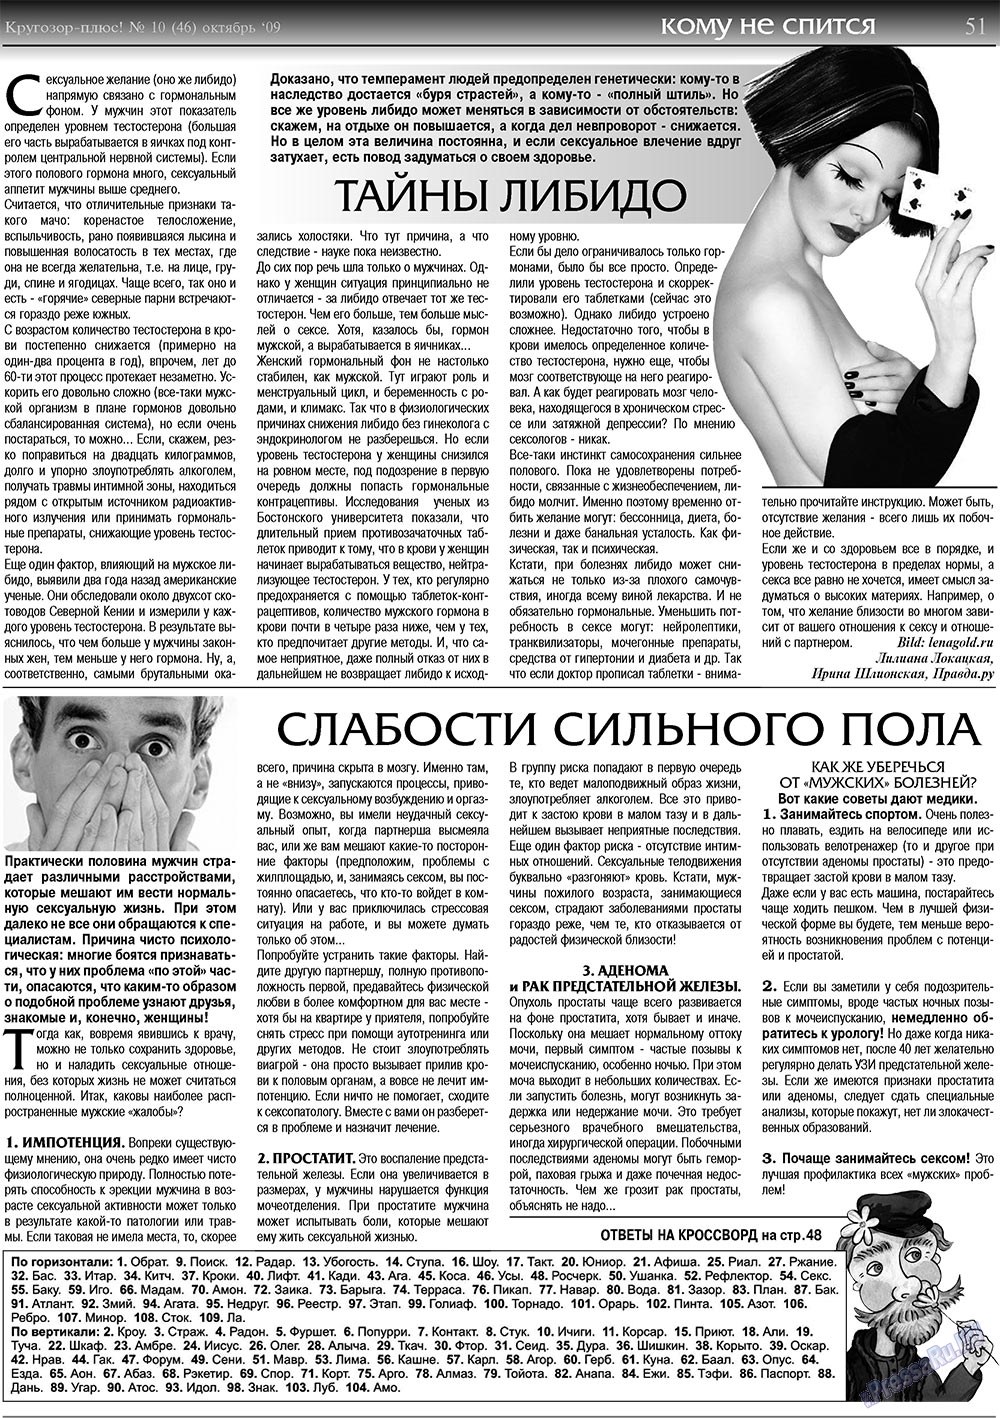 Кругозор плюс!, газета. 2009 №10 стр.51